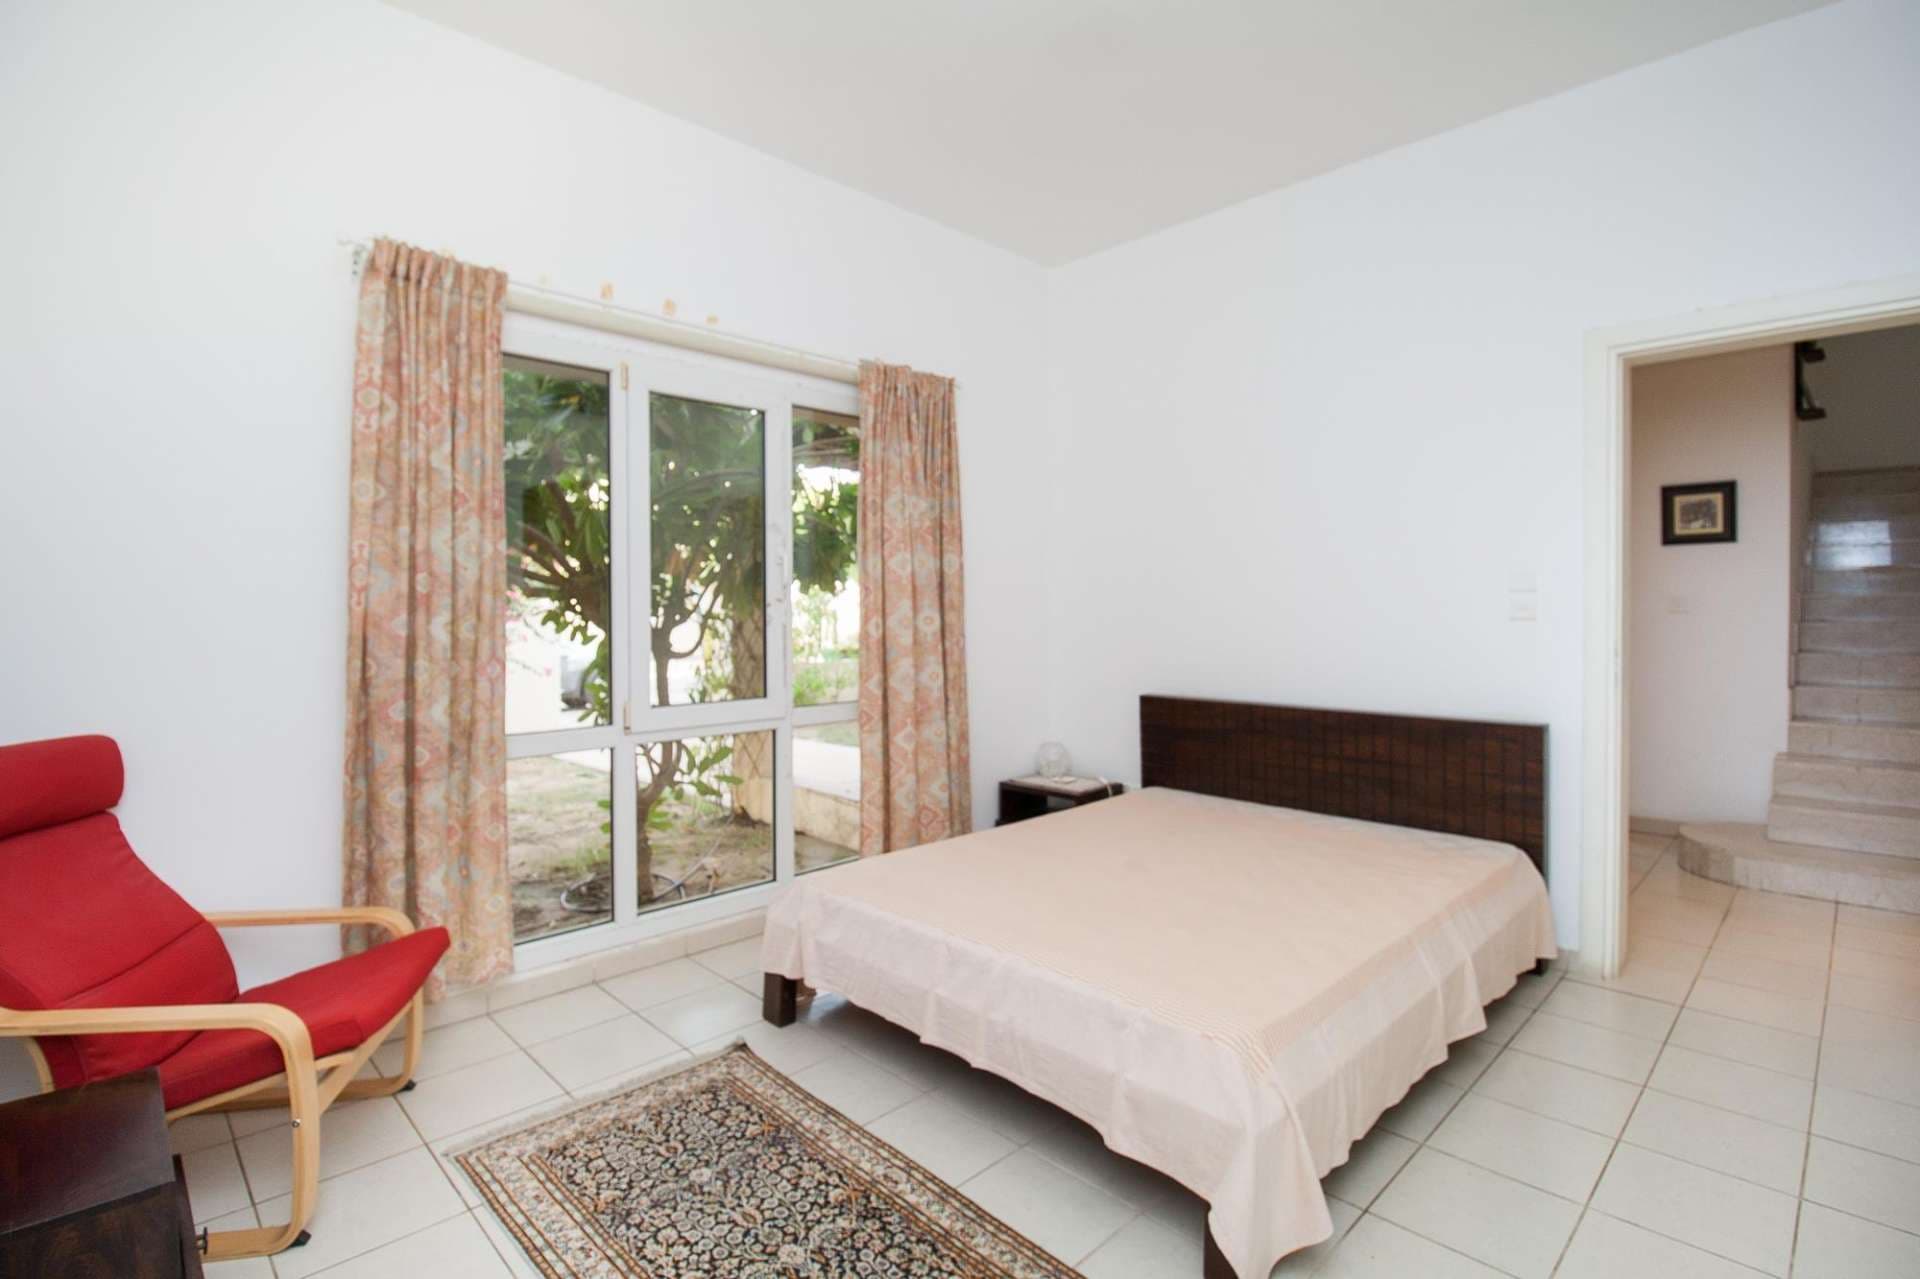 4 Bedroom Villa For Rent Meadows 3 Lp04877 960047758da5d00.jpg